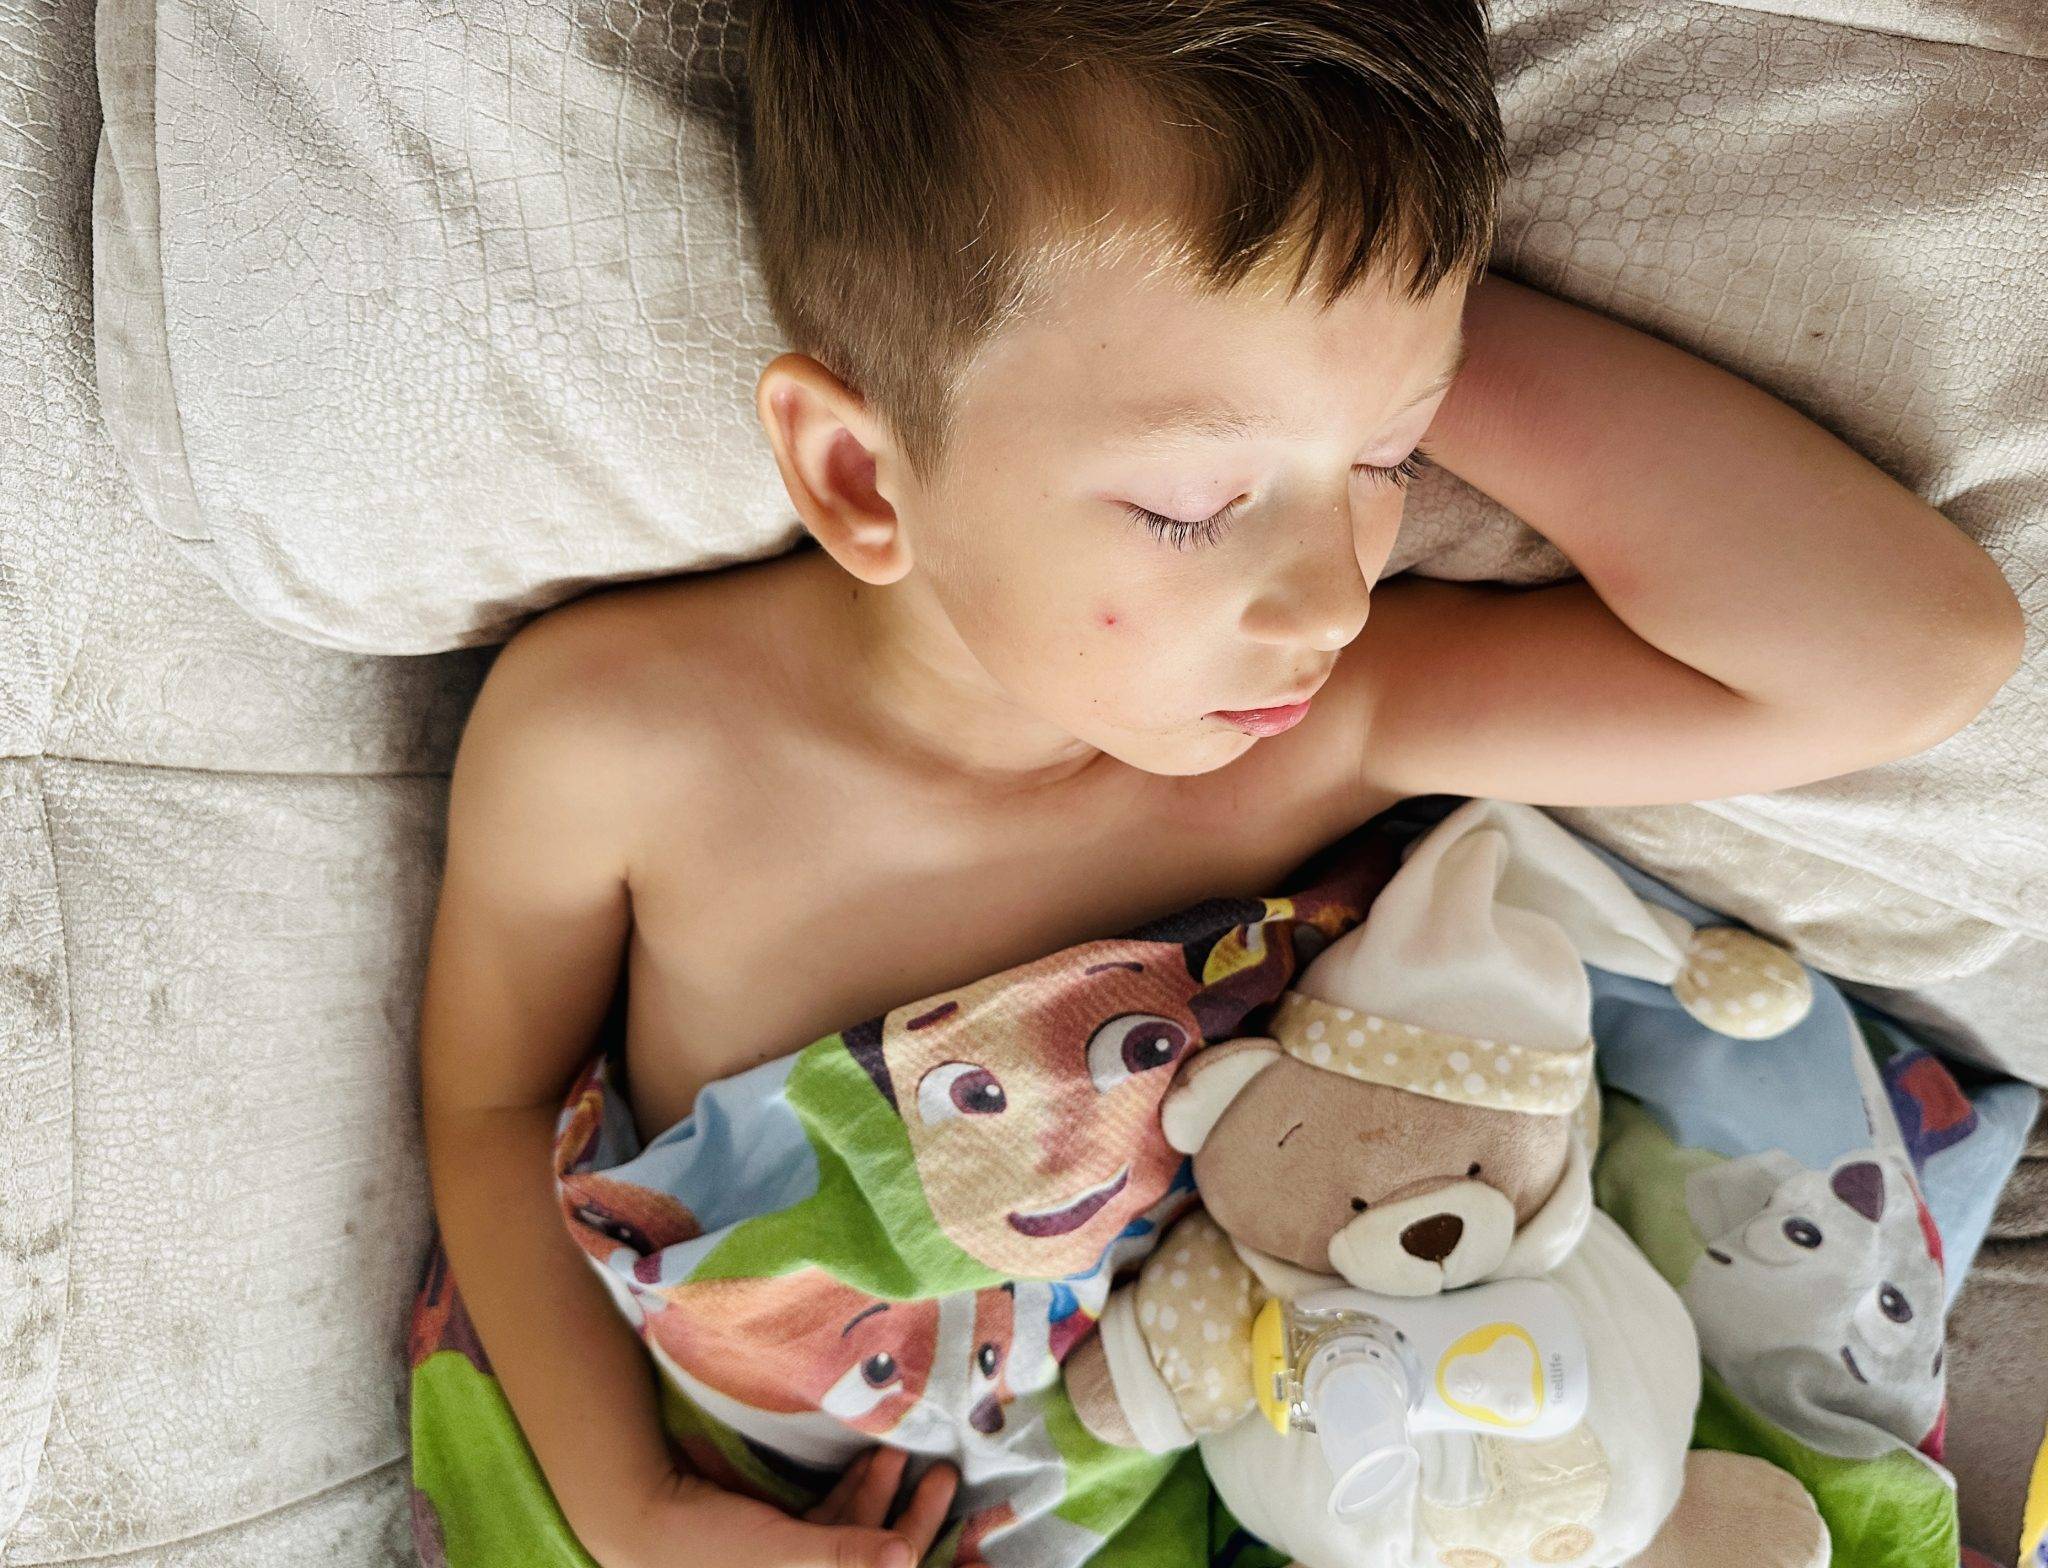 Miegantis vaikas su inhaliatoriumi